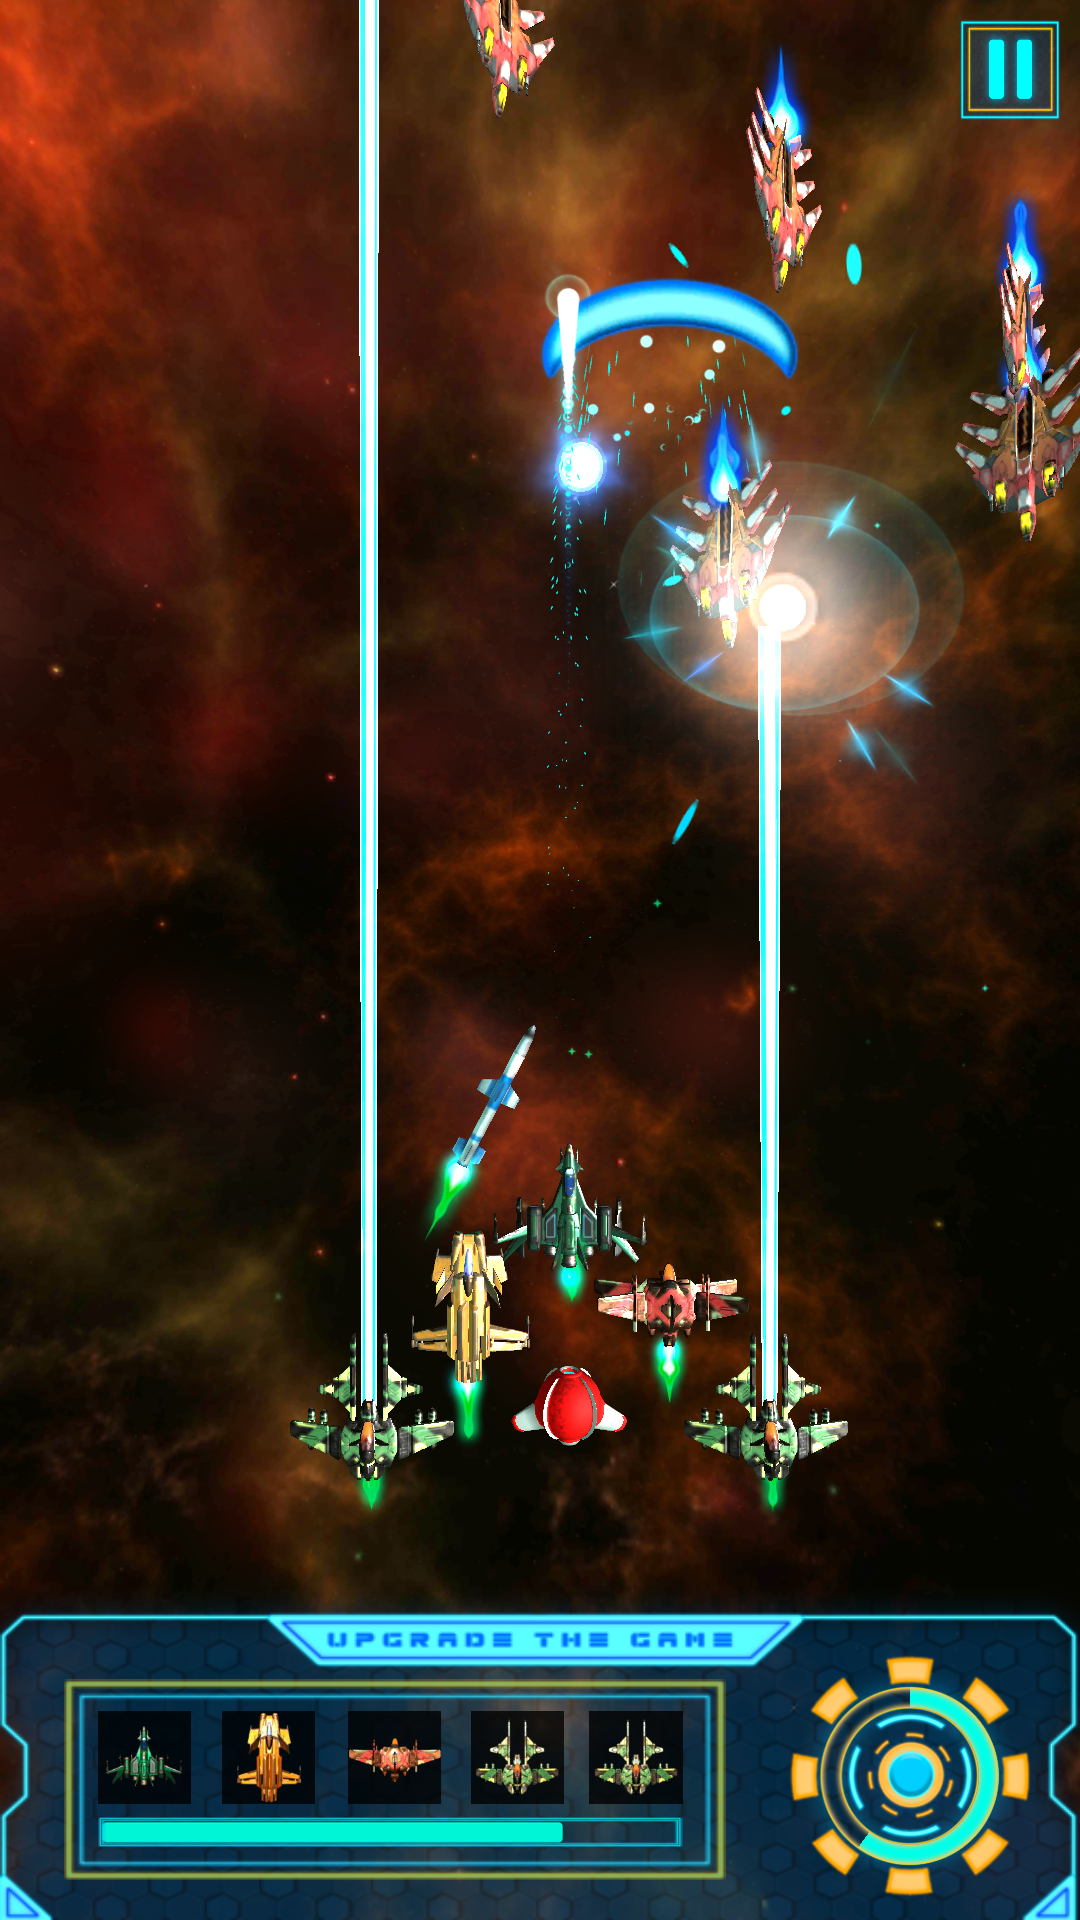 Screenshot 1 of Обновите игру 3: Стрельба из космического корабля 1.410